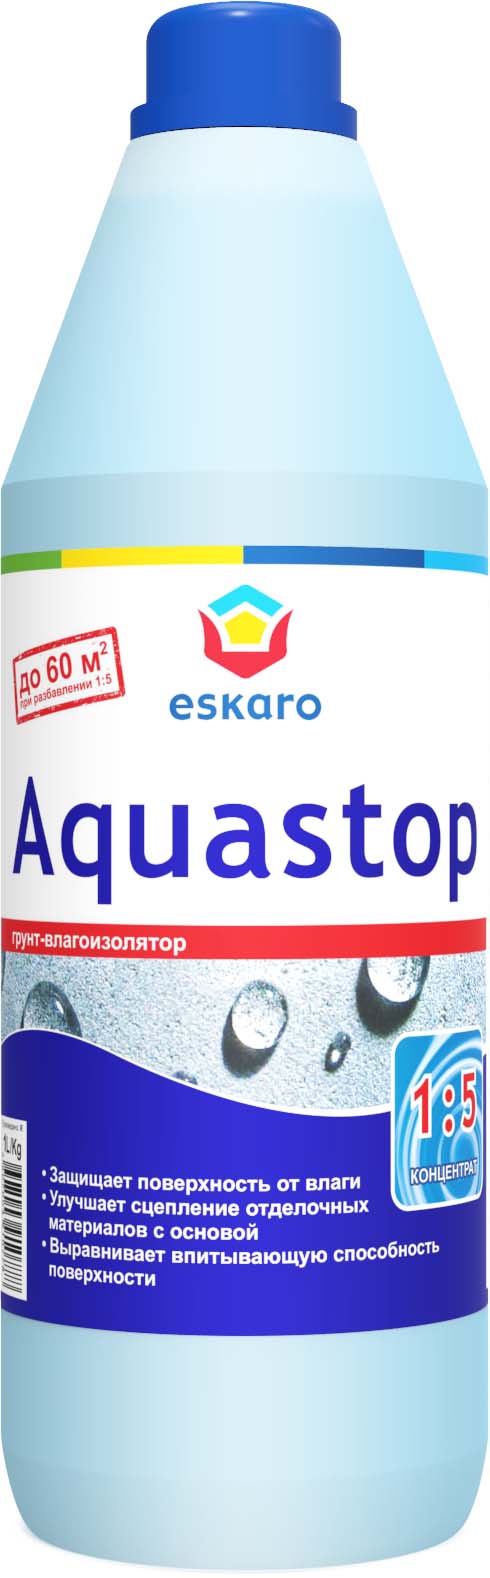 Акриловый грунт влагоизолятор (грунтовка) Eskaro Aquastop 0,5 л концентрат 1:5